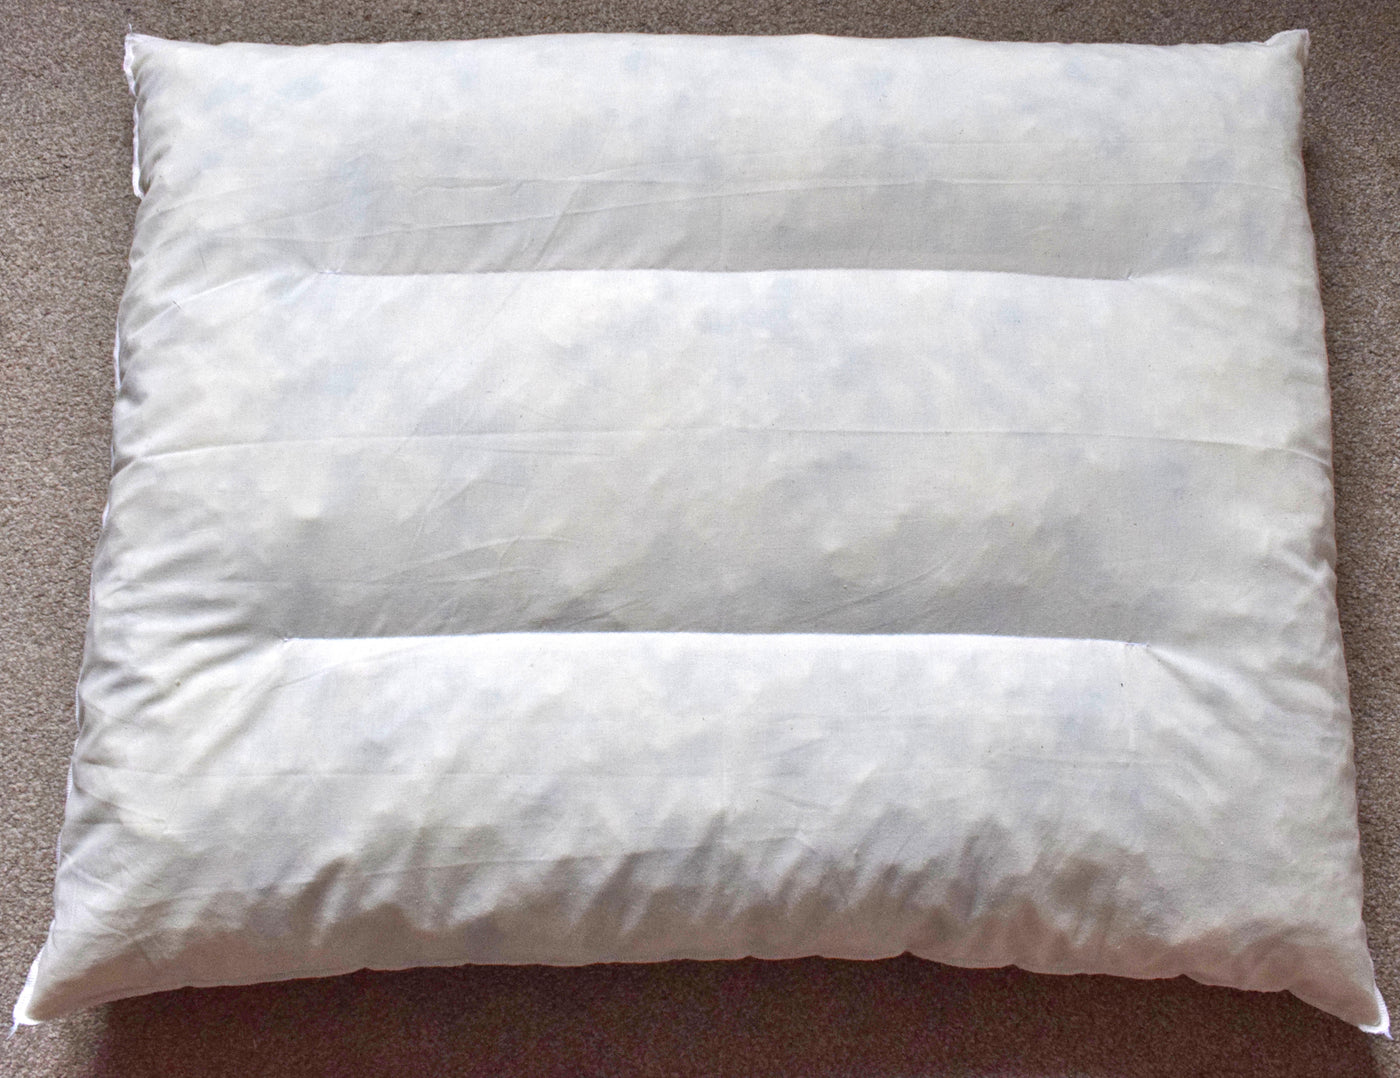 Orthopaedic & Memory Foam Crumb Dog Bed Inner Cushions